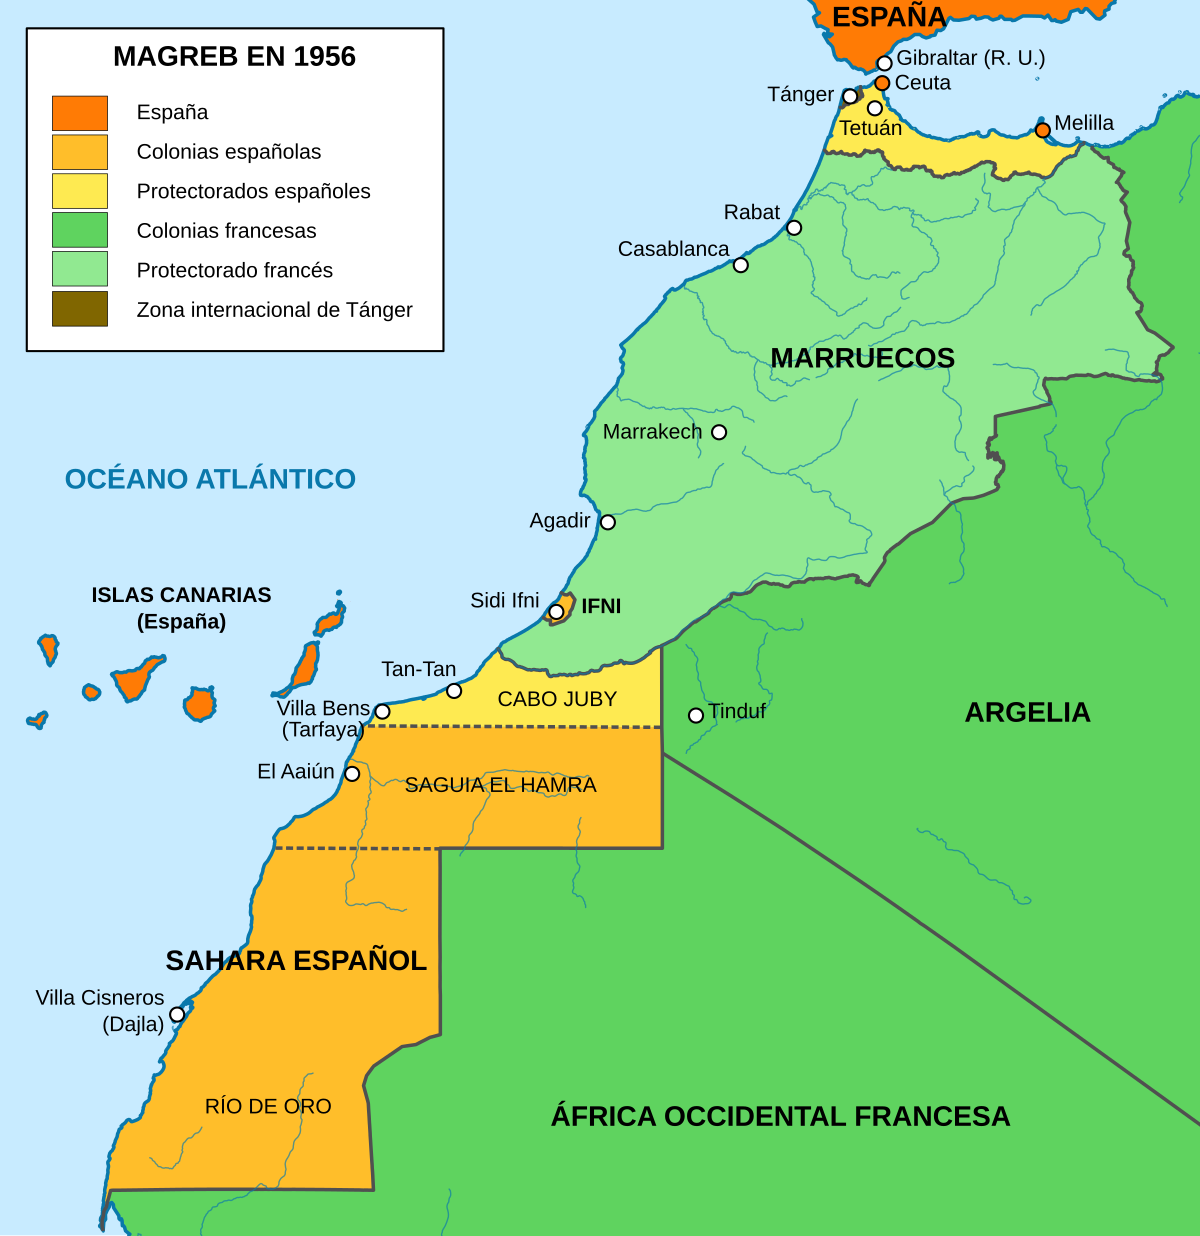 las relaciones entre espana y marruecos segun sus tratados internacionales